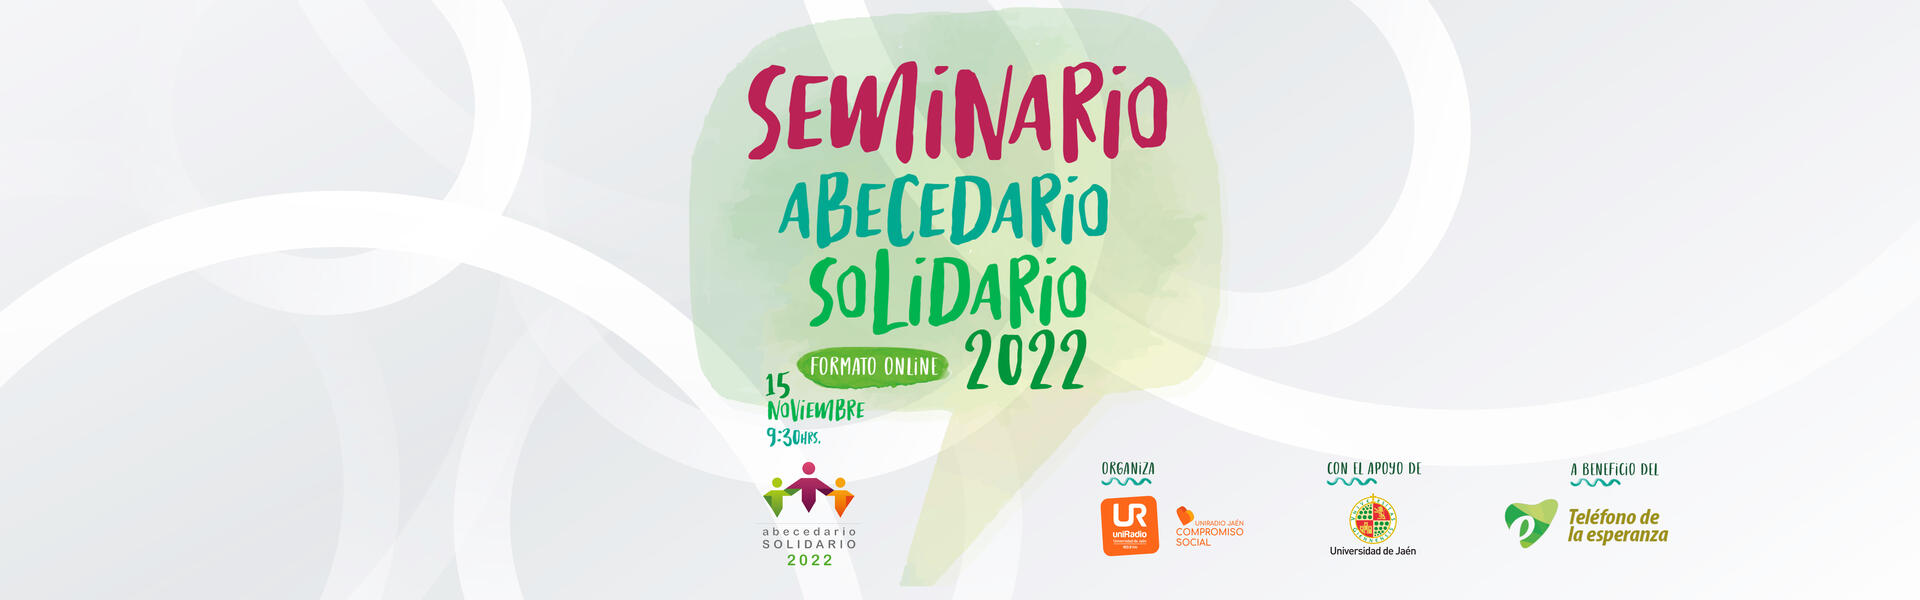 Cartel seminario abecedario solidario 2022